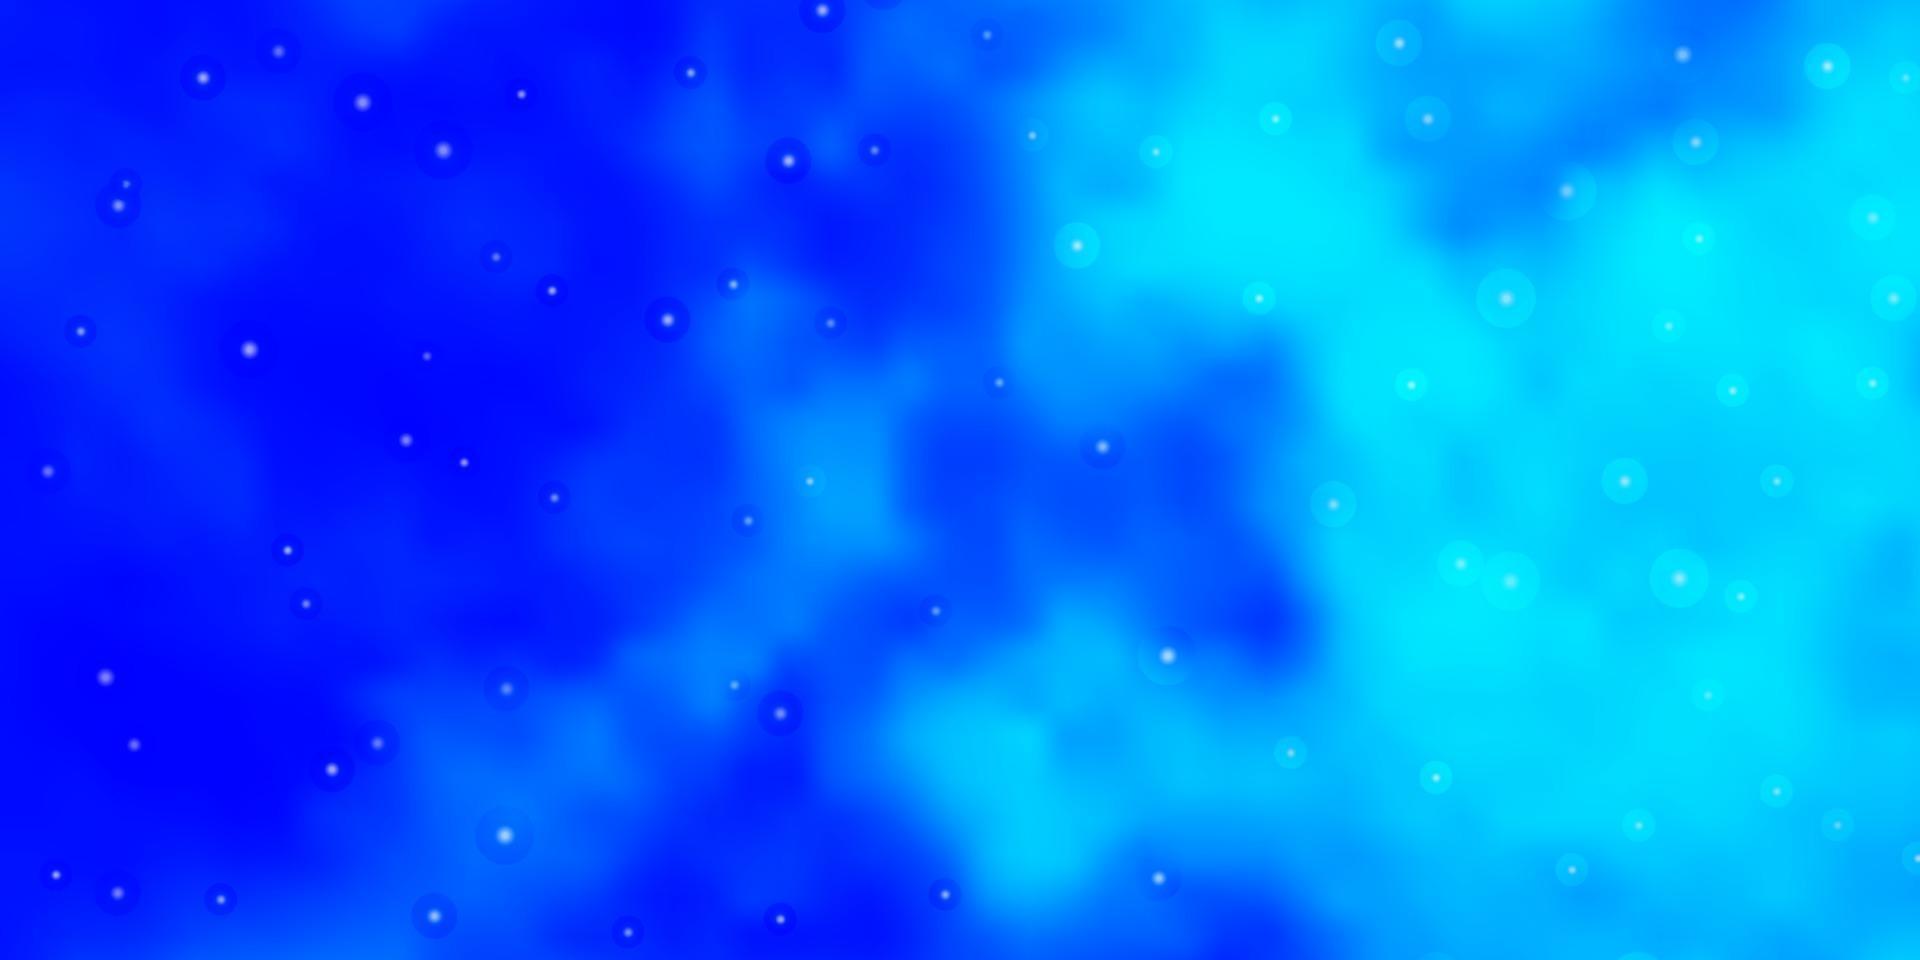 ljusblå vektormall med neonstjärnor. vektor